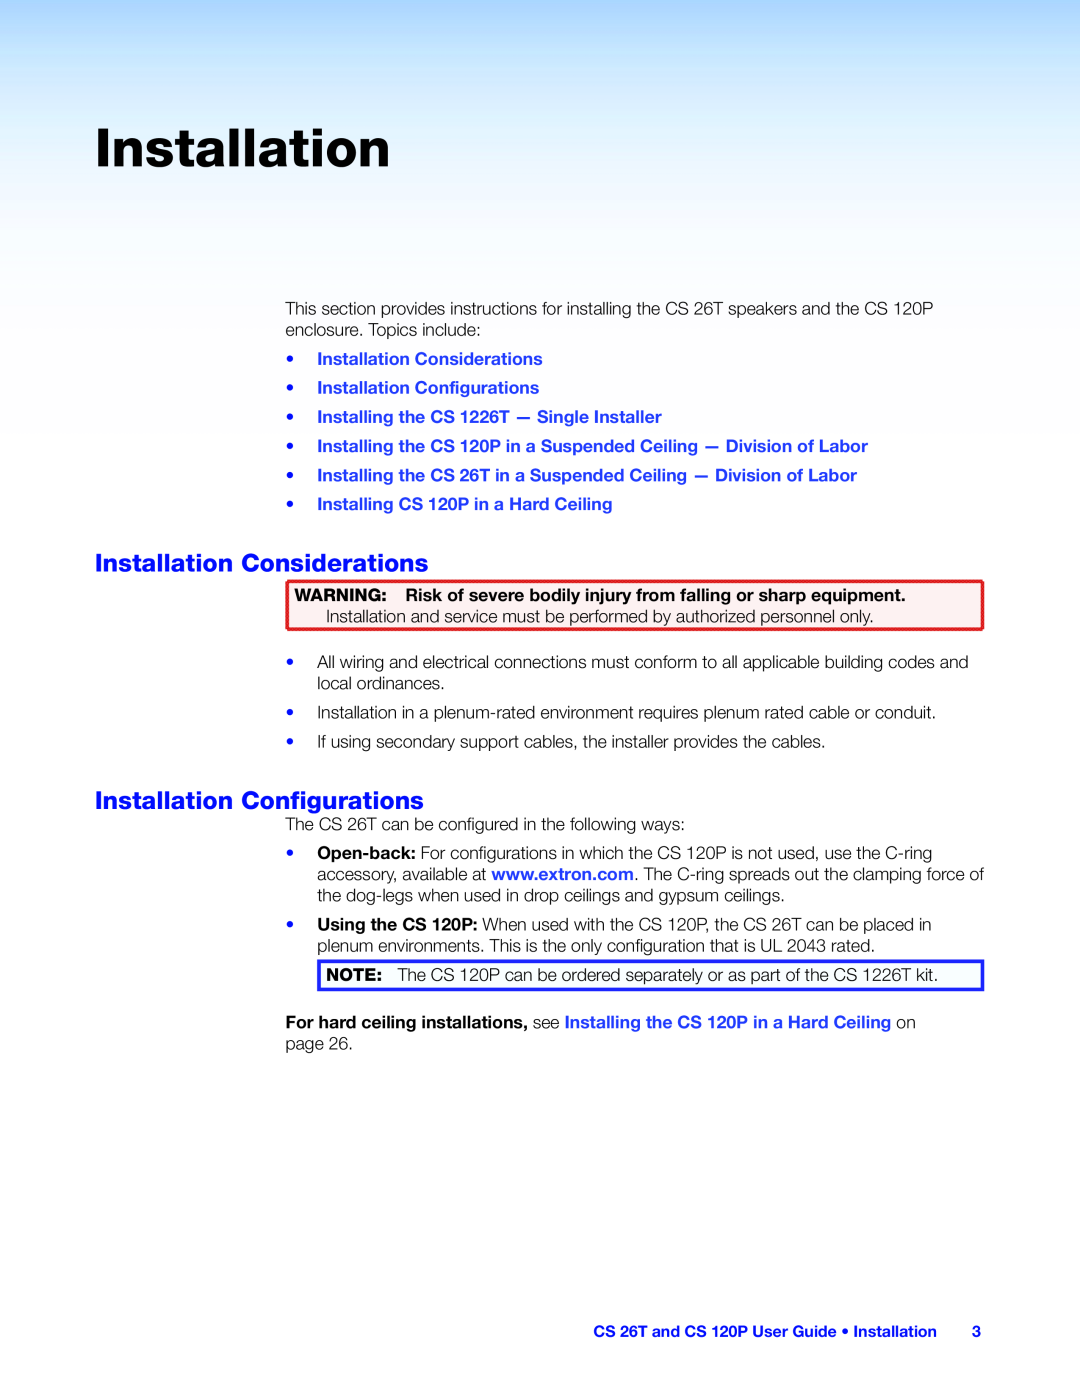 Extron electronic CS 120P, CS 26T, CS 1226T manual Installation Considerations, Installation Configurations 